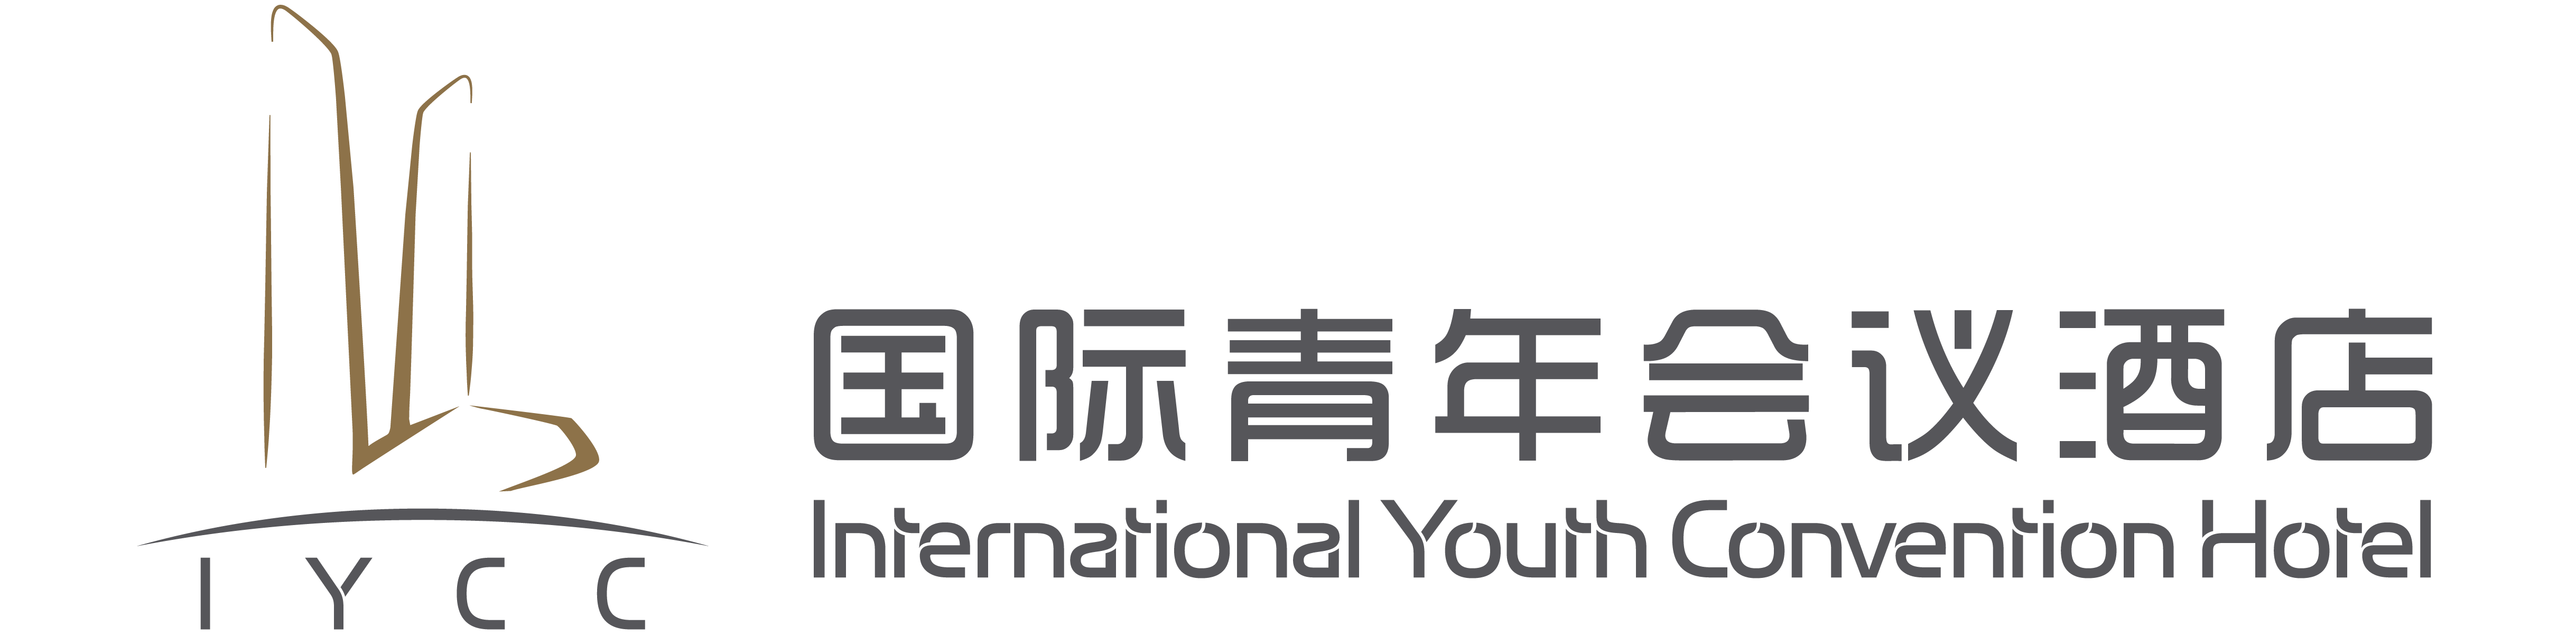 国际青年会议酒店